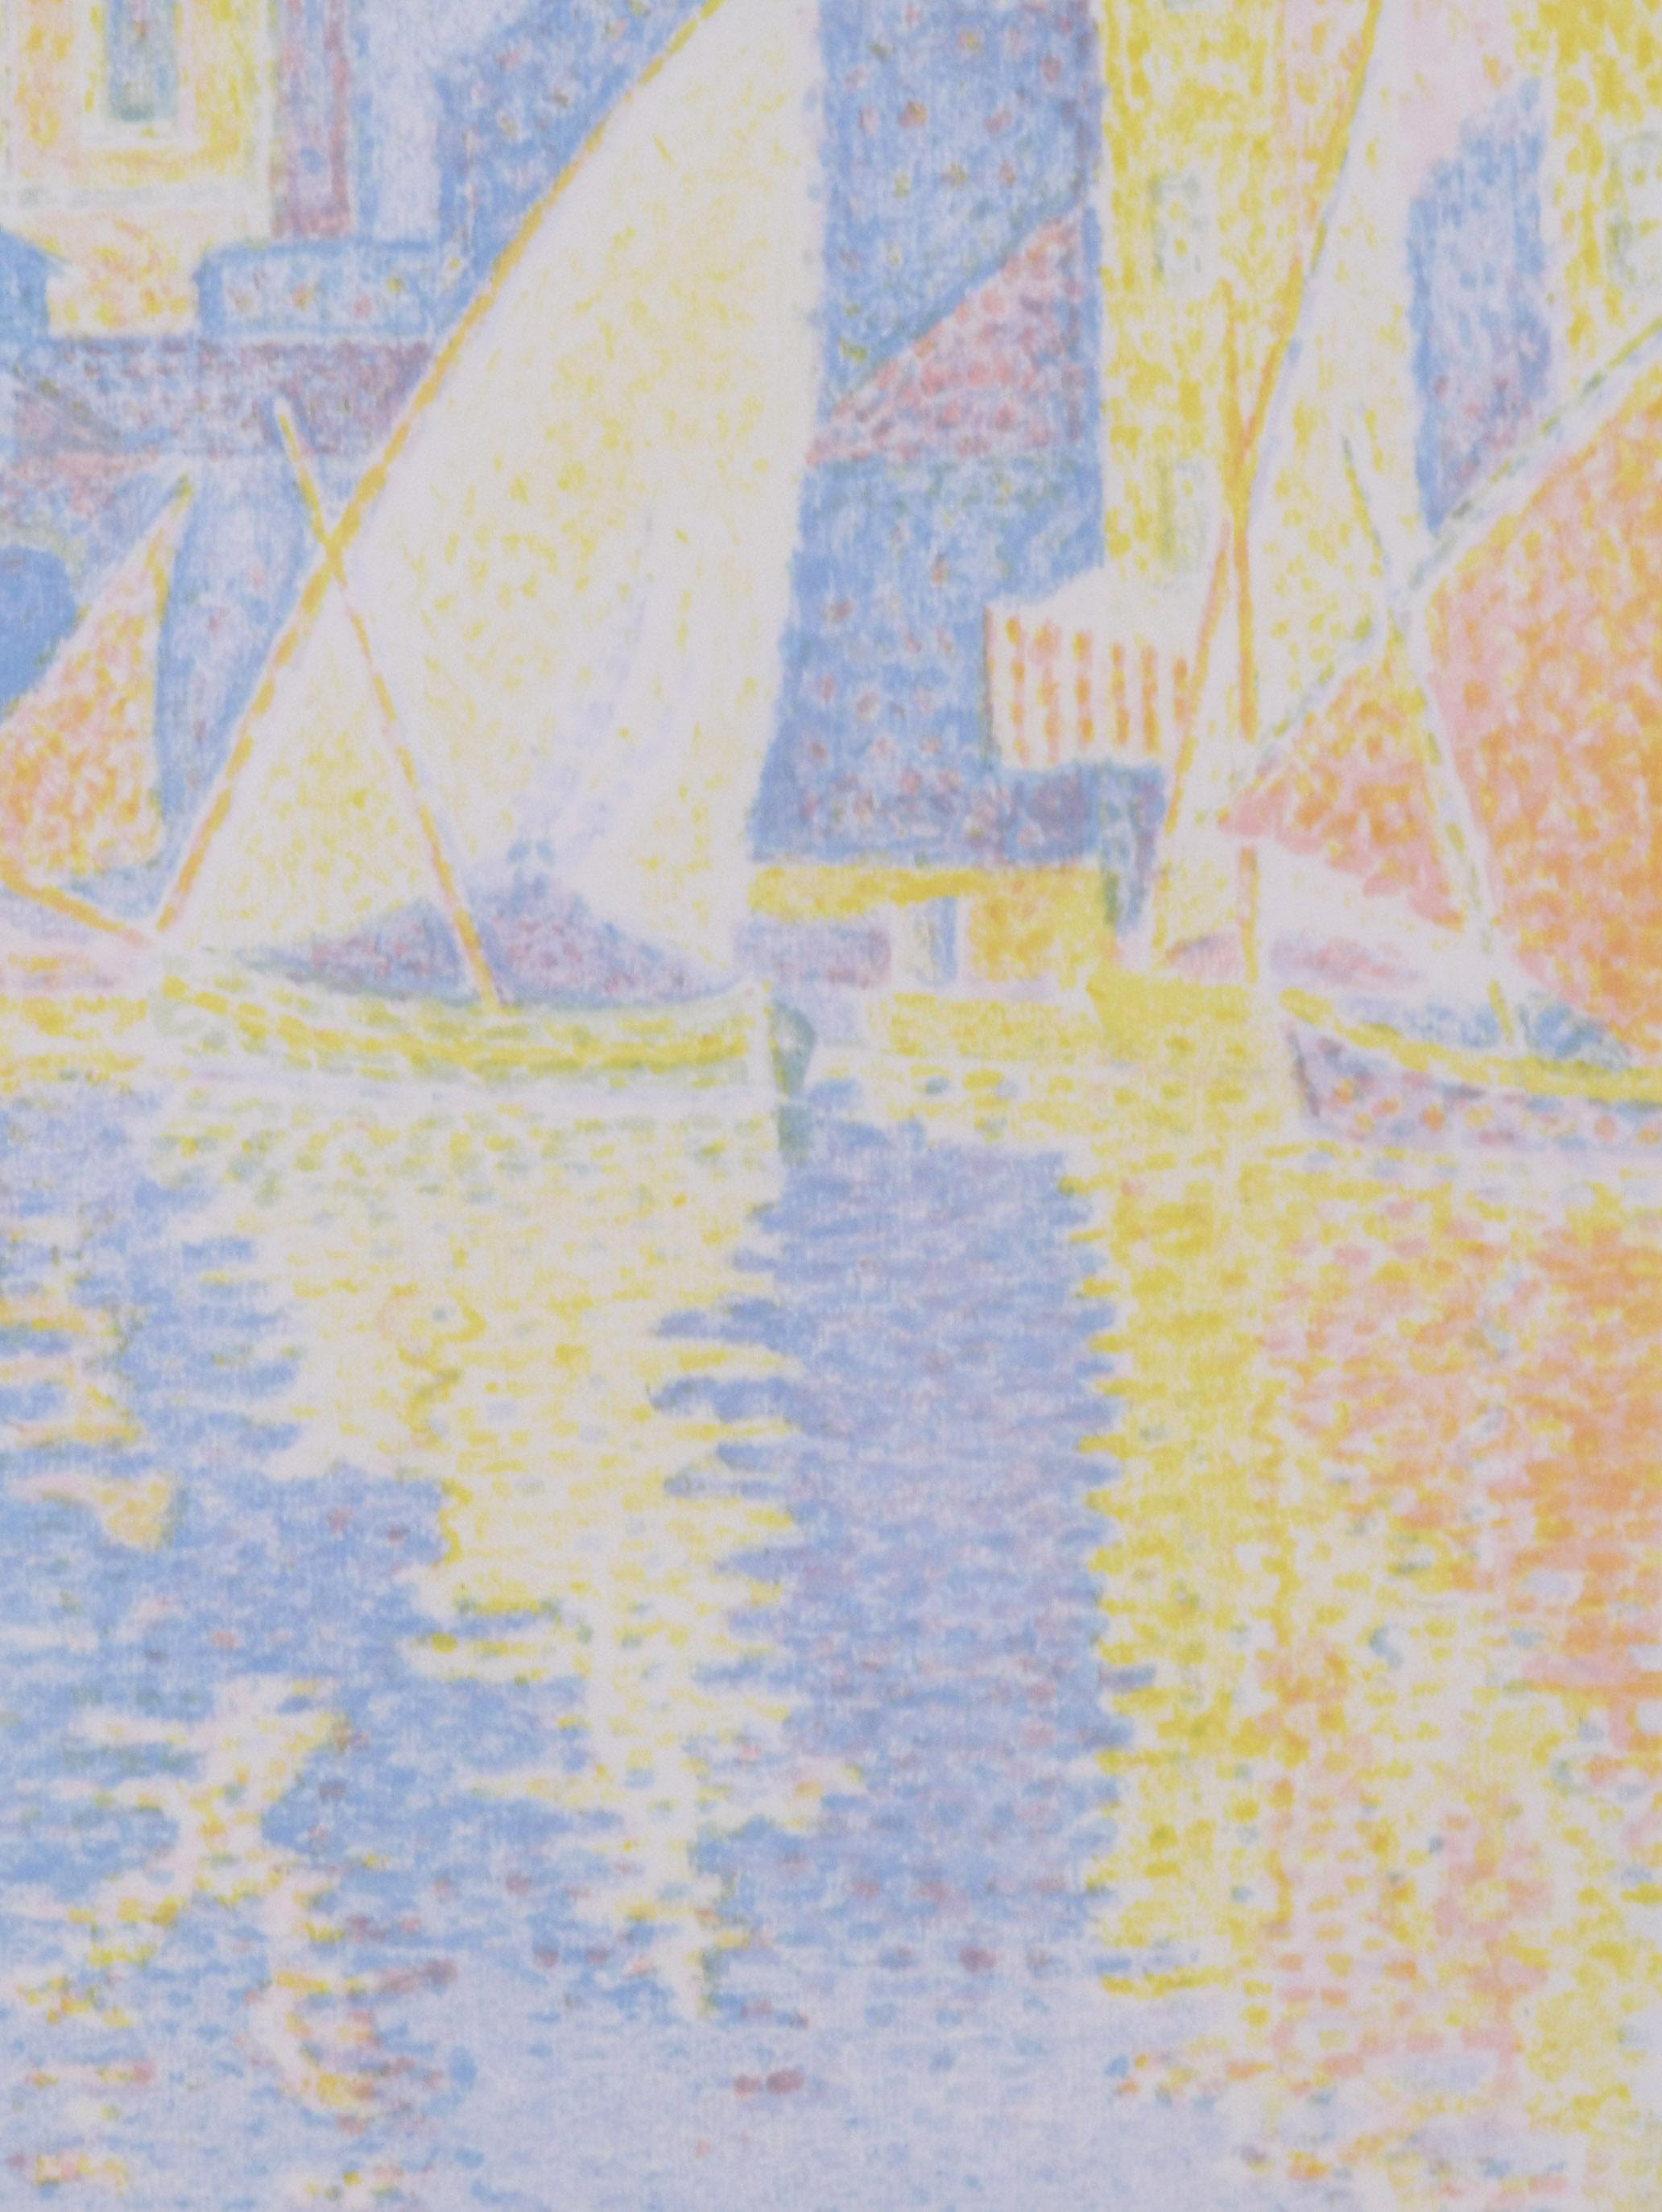 Saint-Tropez-Le Port
Couleur  lithographie, 1897-1898
Signé au crayon en bas à droite (voir photo)
Numéroté au crayon en bas à droite : No. 68 (voir photo)
D'après : Album des Peintres-Gravures, 1898
Publié par Ambrose Vollard, Paris
Imprimeur :